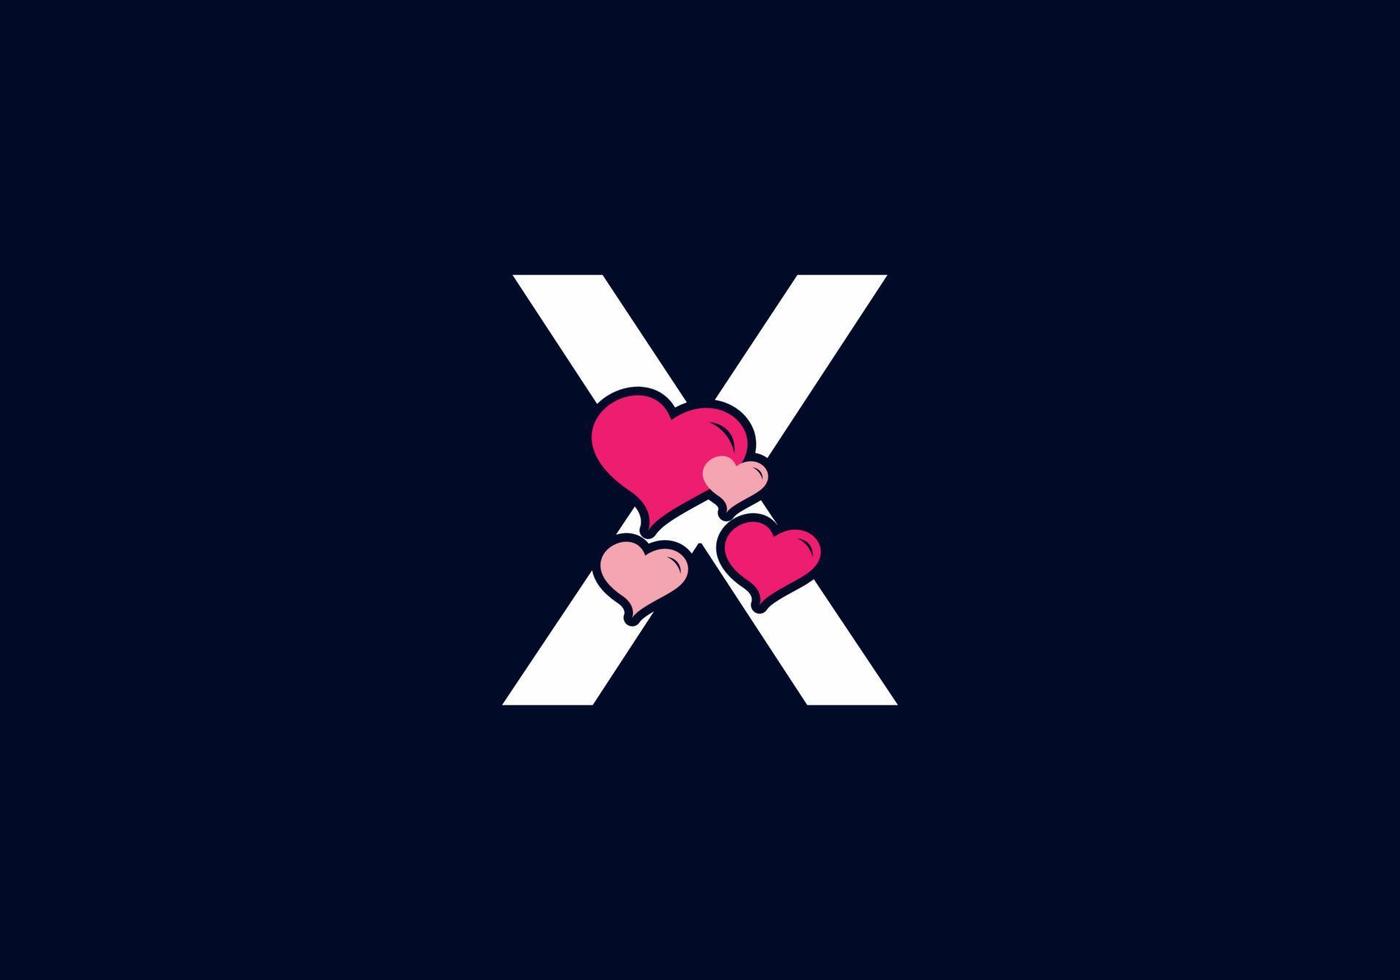 weiß rosa farbe von x anfangsbuchstabe mit liebessymbol vektor